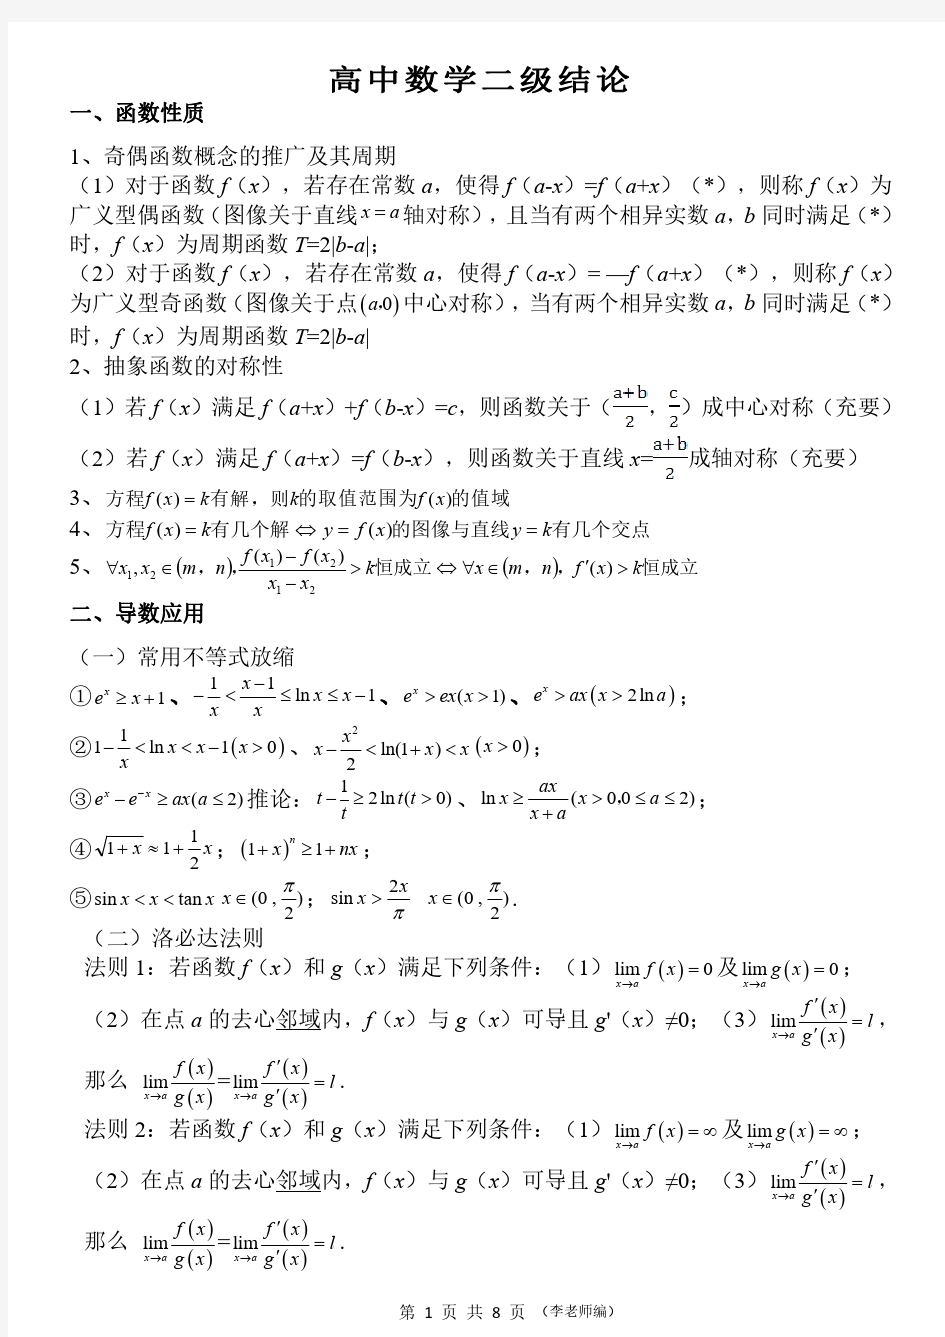 高中数学二级结论精.pdf